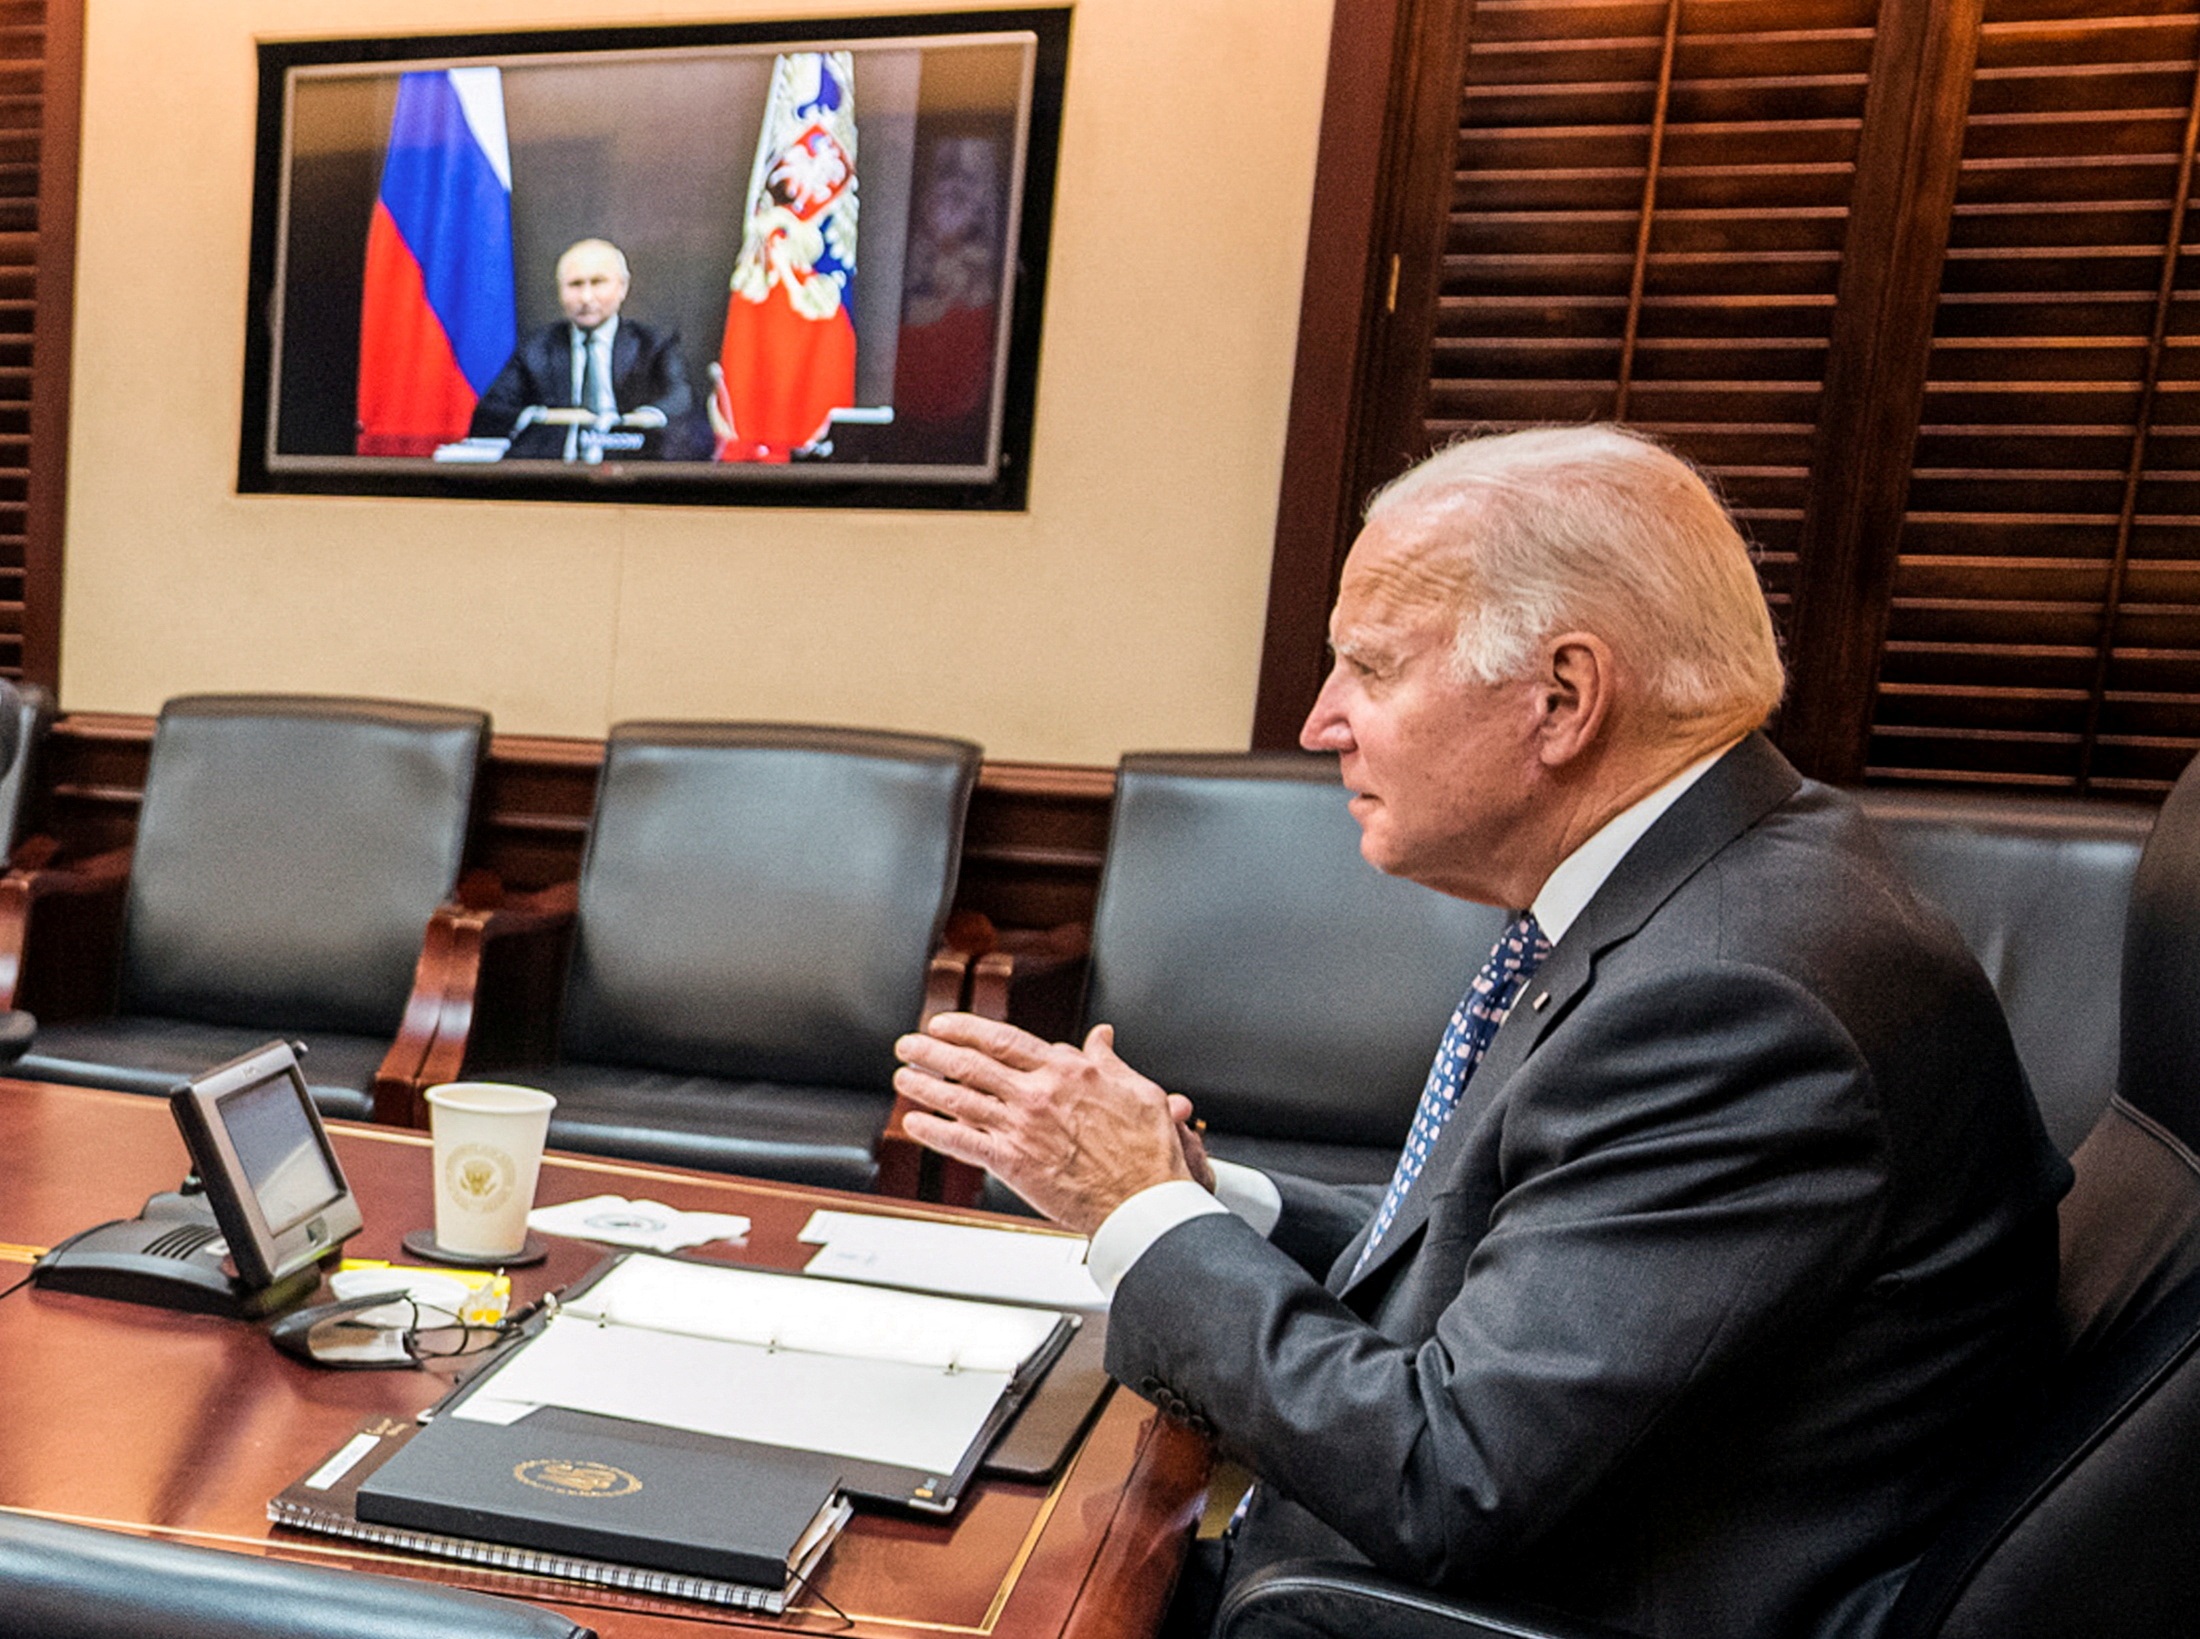 Il presidente Joe Biden tiene colloqui virtuali con il presidente russo Vladimir Putin tra i timori occidentali che Mosca pianifichi di attaccare l'Ucraina, durante una videochiamata sicura dalla Situation Room alla Casa Bianca a dicembre.